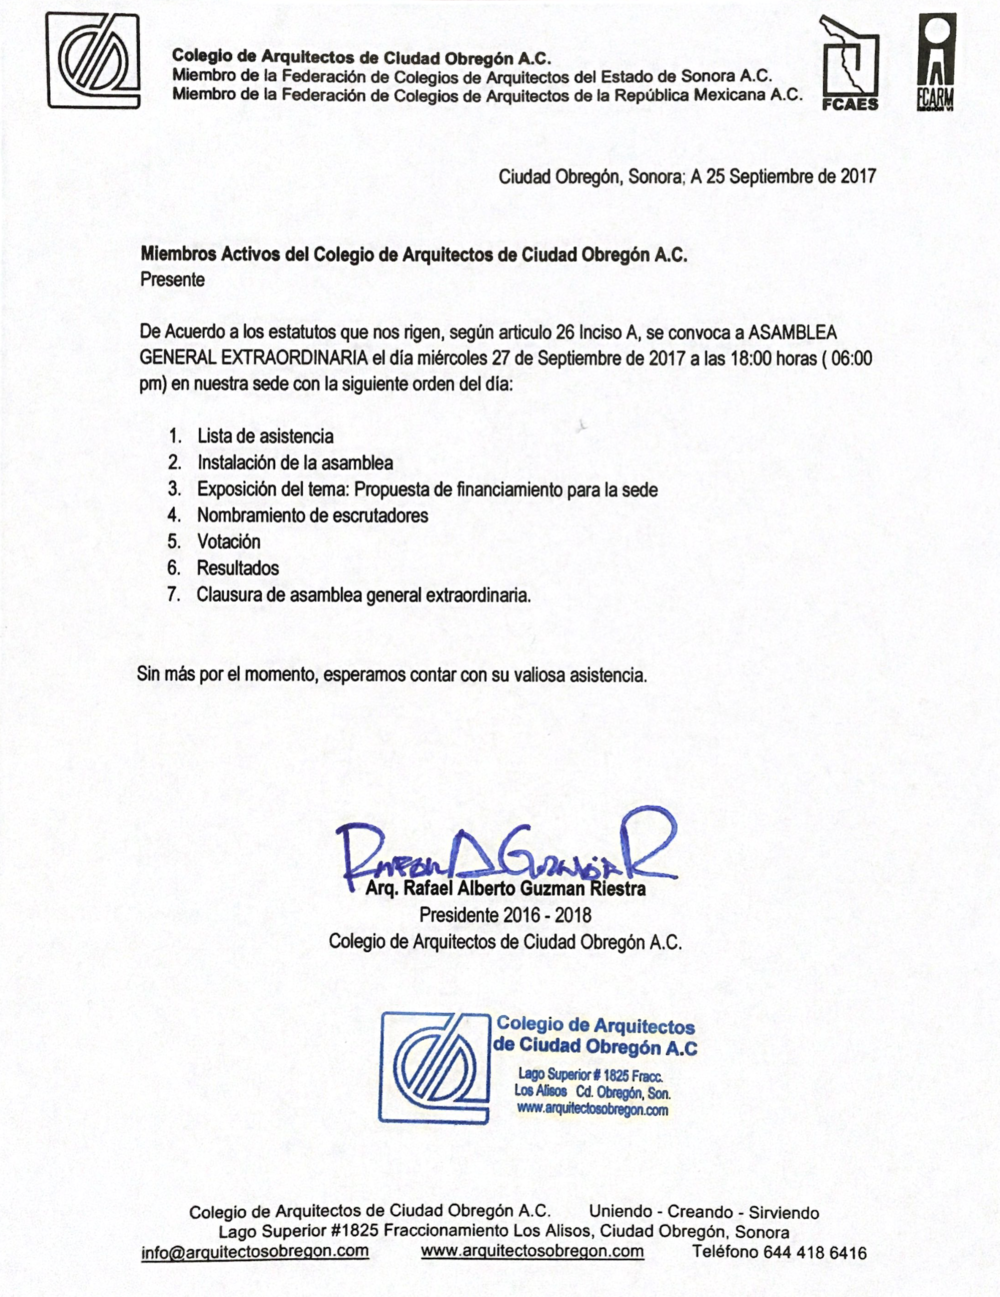 Convocatoria de asamblea general extraordinaria — Colegio de Arquitectos de  Ciudad Obregón .